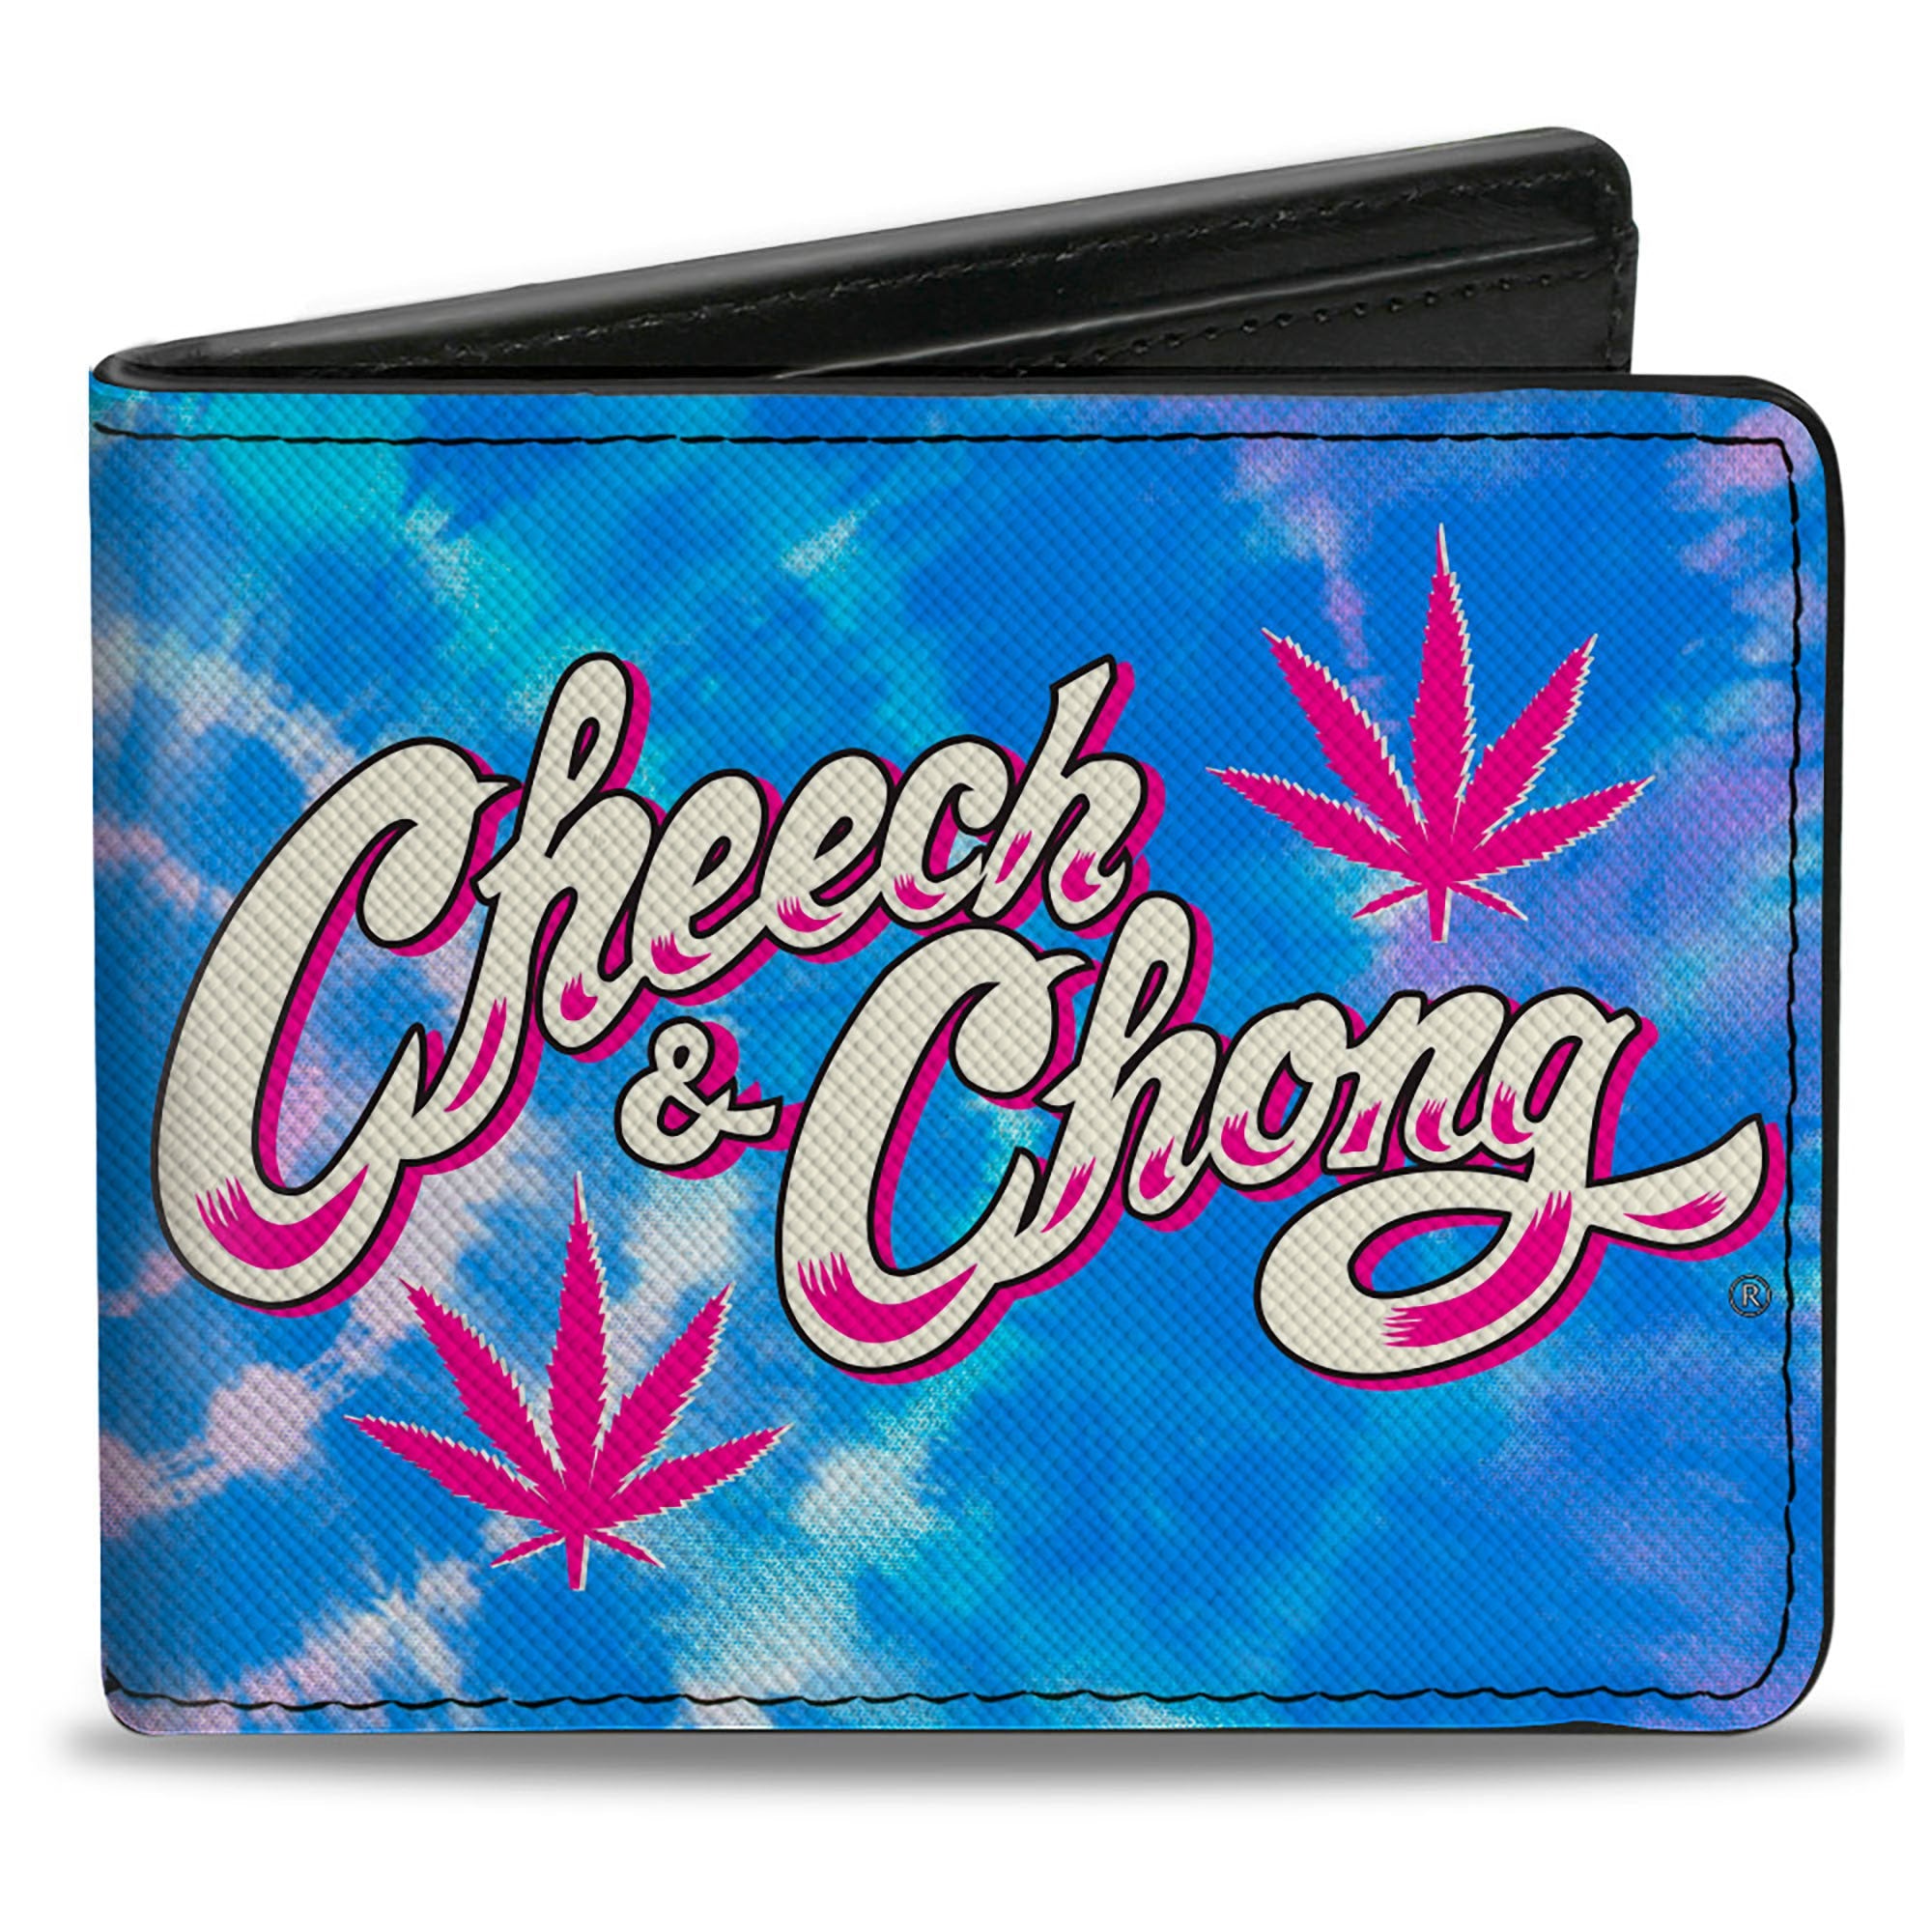 Bi-Fold Wallet - CHEECH & CHONG Title Logo with Bud Leaf Tie Dye Blues/Pinks/White